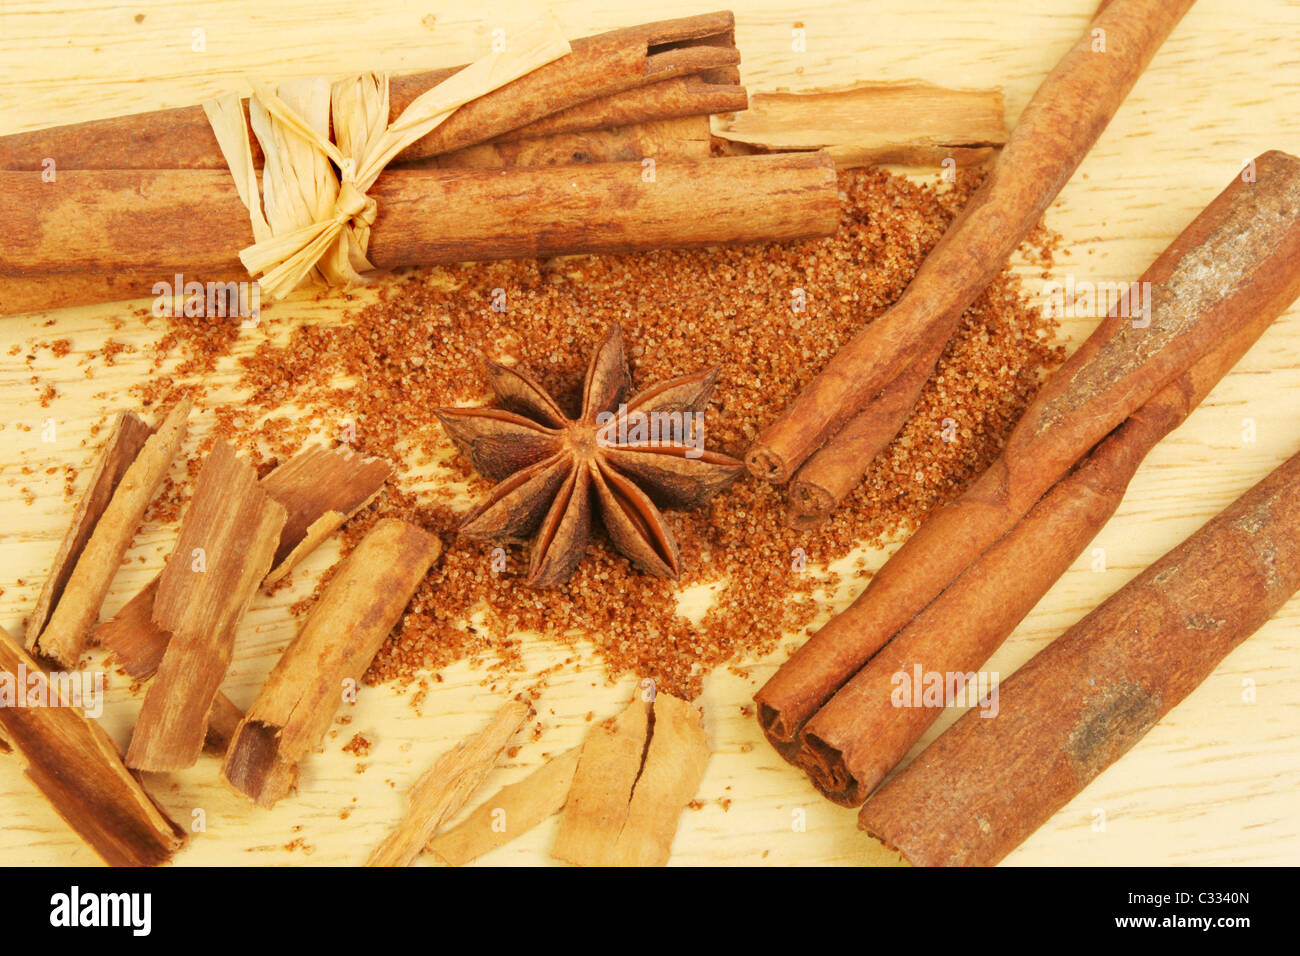 La cannelle, l'anis étoilé et de cinq épices chinois sur une planche en bois Banque D'Images